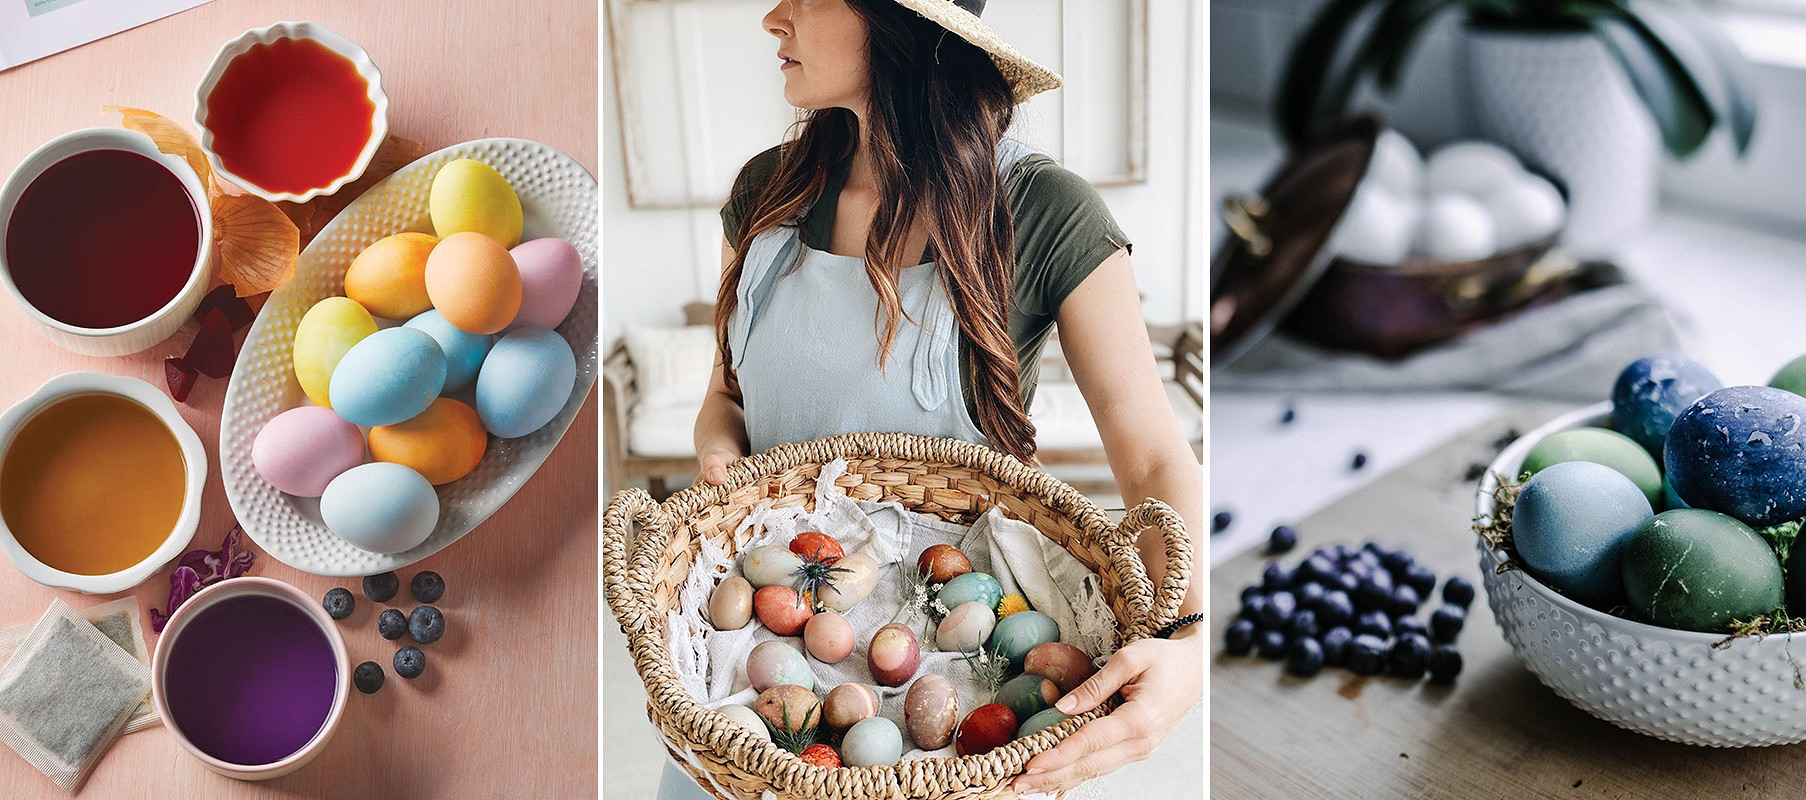 Как покрасить яйца: новые идеи. Как красить яйца на Пасху, идеи декора пасхальных яиц